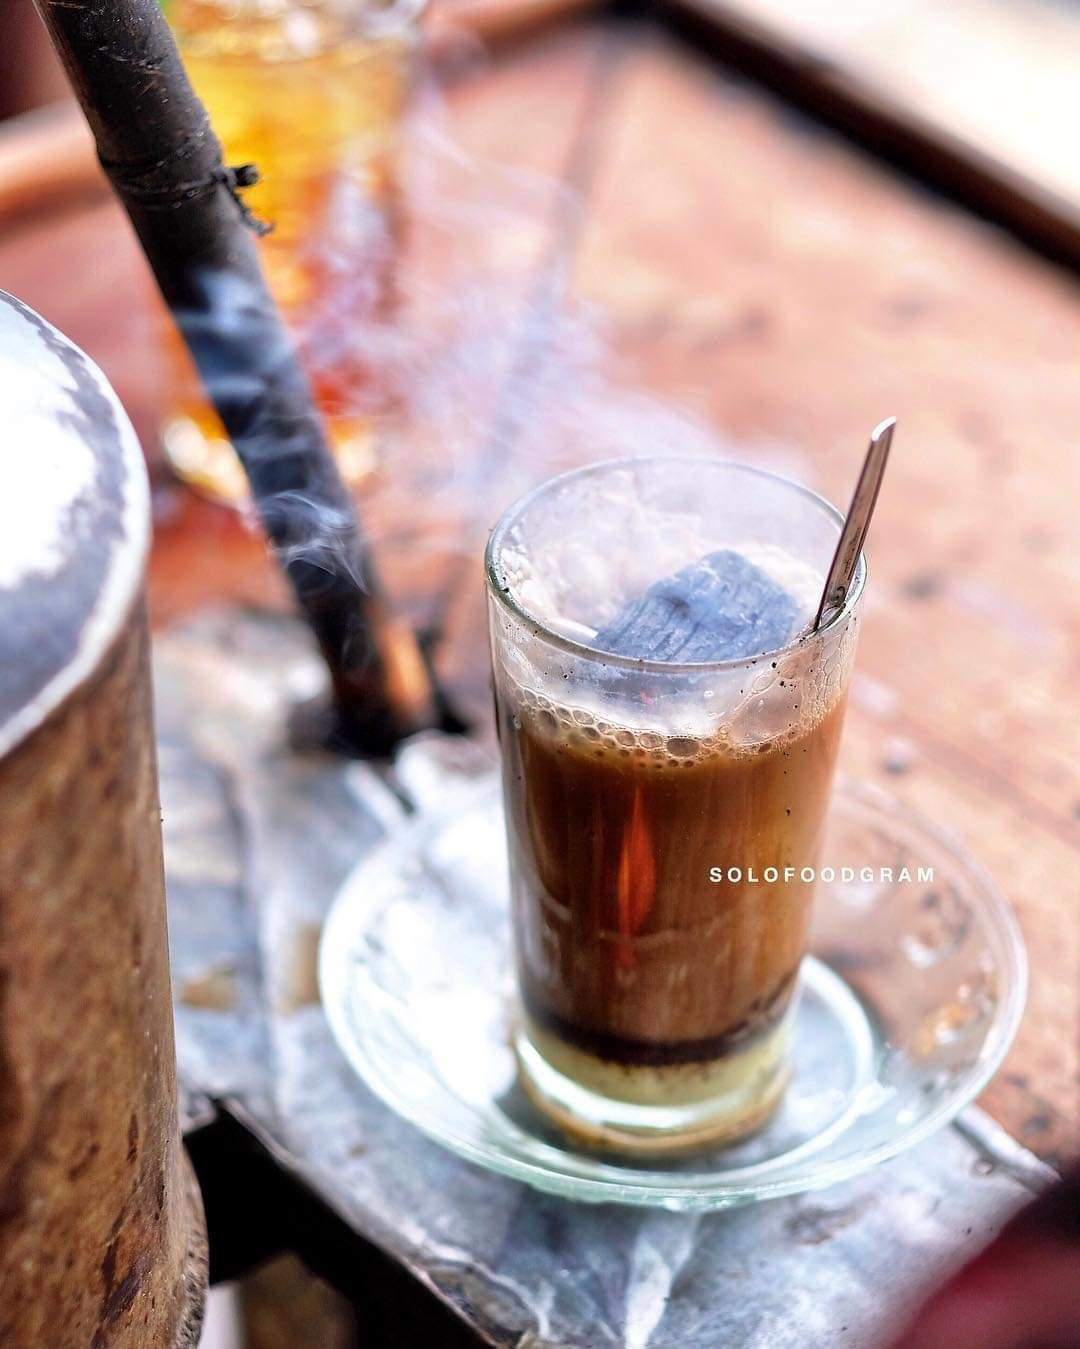 Bỏ than nóng vào cà phê, thức uống “hot trend” có hại cho sức khỏe nhưng vẫn hút khách - 6